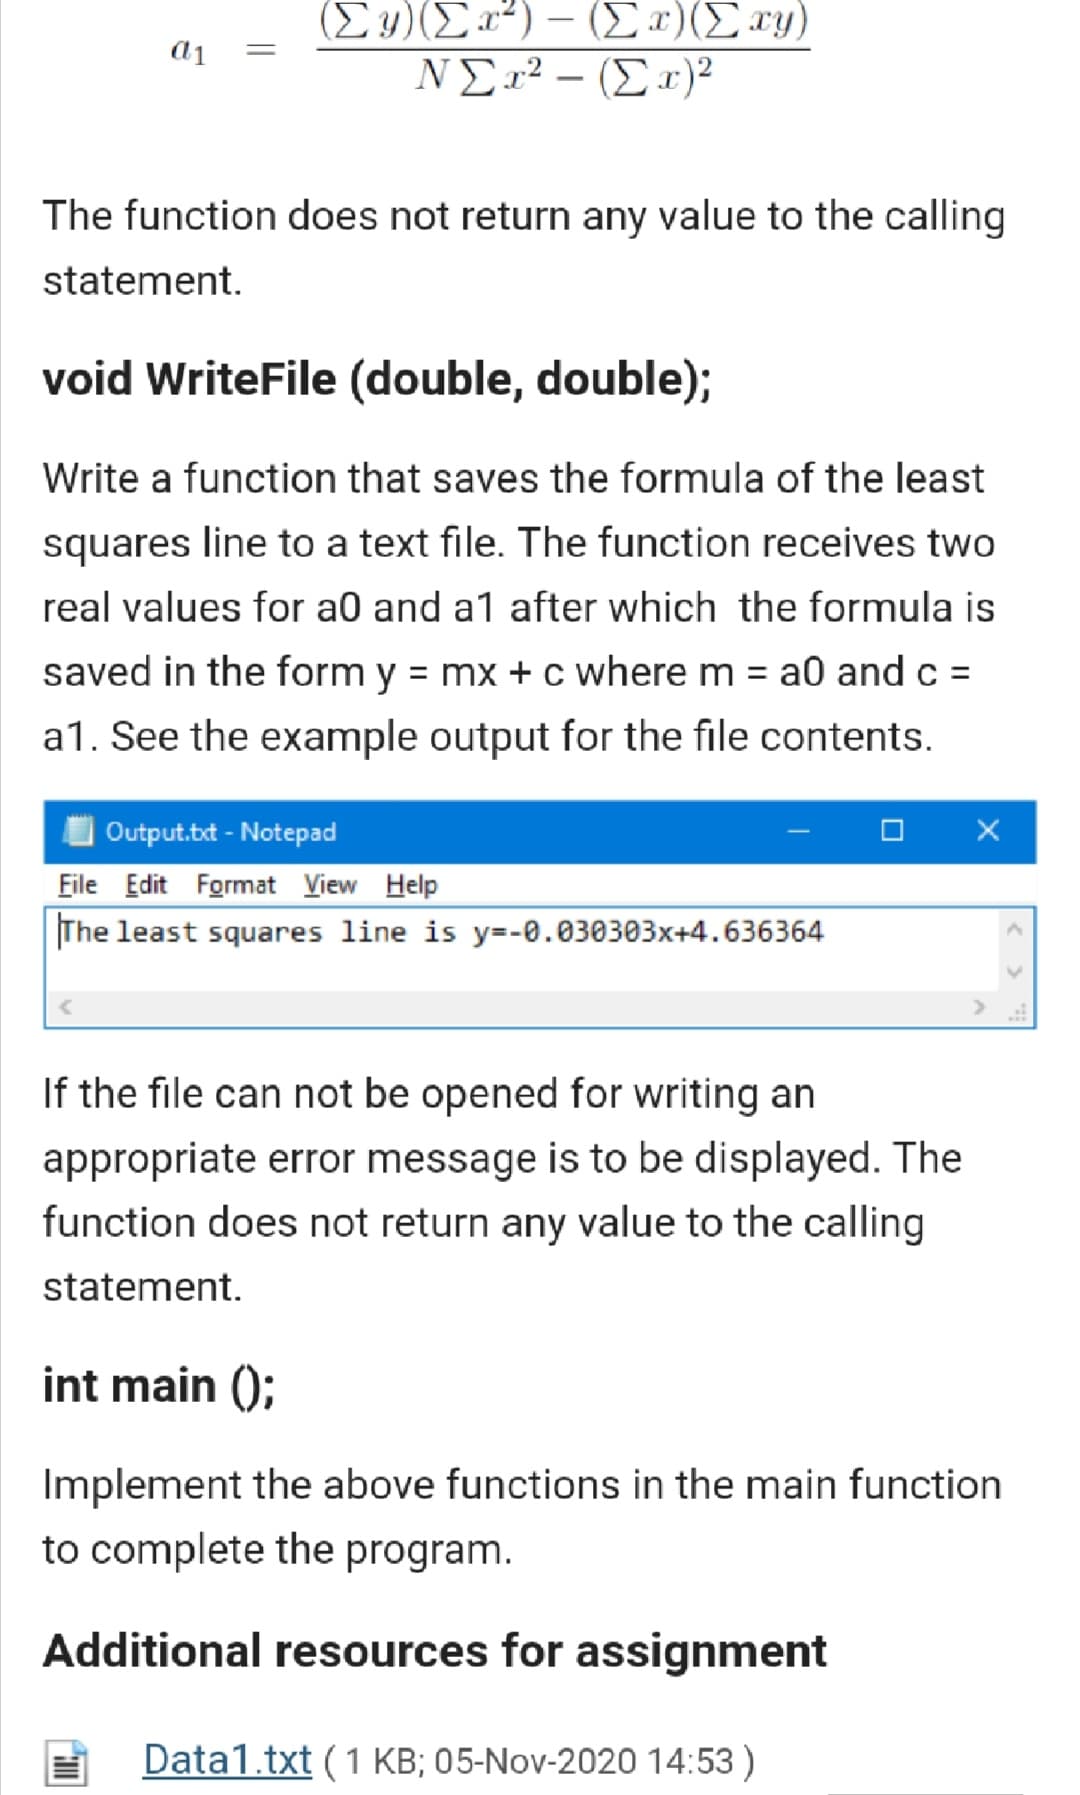 (Σ) /Σα") -(Σ ) (Σ)
ΝΣ2? - (Σ ε)>
|
The function does not return any value to the calling
statement.
void WriteFile (double, double);
Write a function that saves the formula of the least
squares line to a text file. The function receives two
real values for a0 and a1 after which the formula is
saved in the form y = mx + c where m = a0 and c =
%3D
a1. See the example output for the file contents.
Output.t - Notepad
File Edit Format View Help
The least squares line is y=-0.030303x+4.636364
If the file can not be opened for writing an
appropriate error message is to be displayed. The
function does not return any value to the calling
statement.
int main ();
Implement the above functions in the main function
to complete the program.
Additional resources for assignment
Data1.txt (1 KB; 05-Nov-2020 14:53 )
